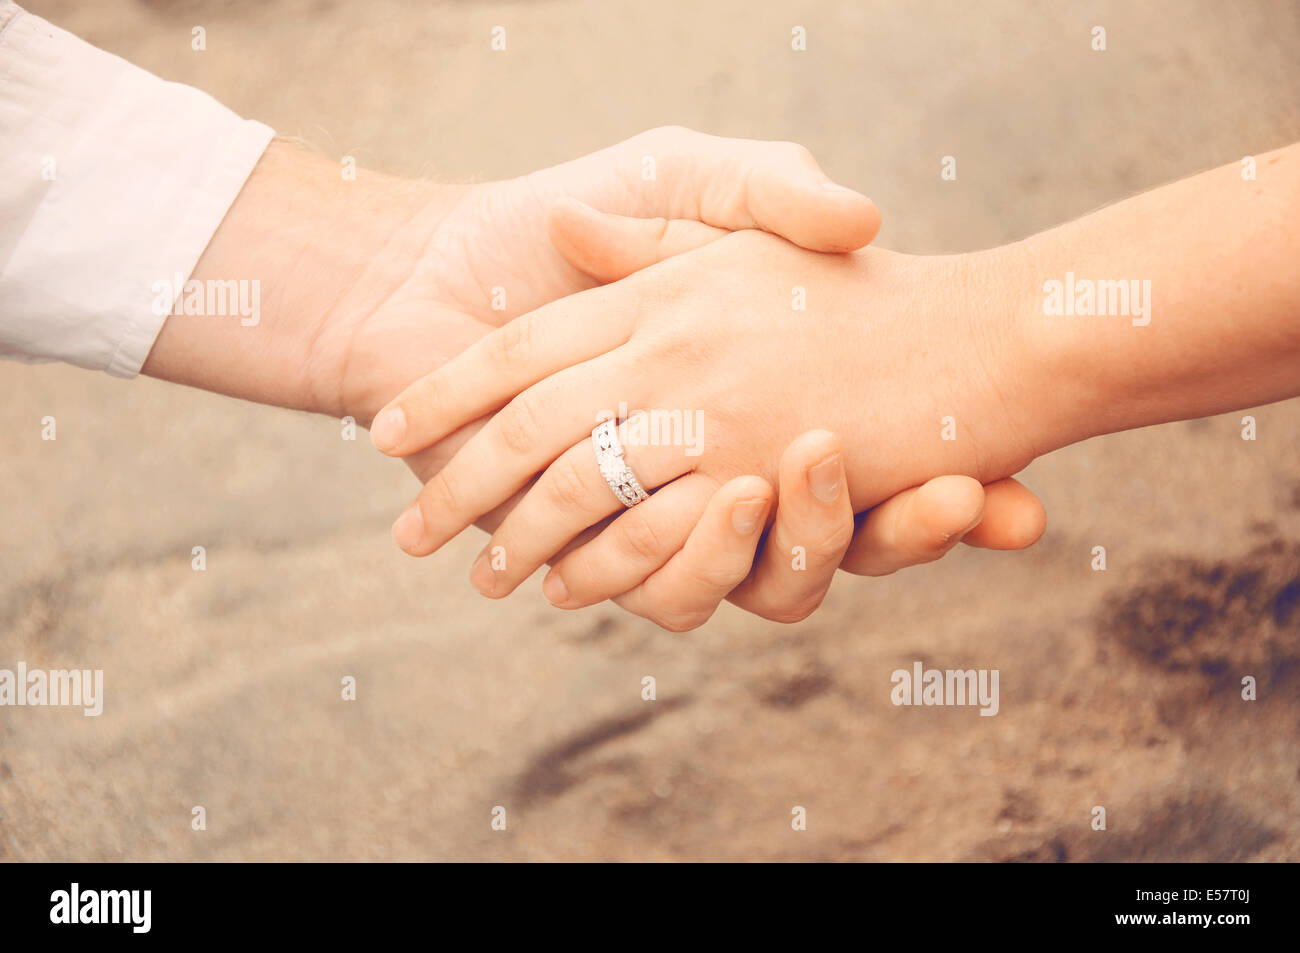 manos-en-la-playa-una-nueva-pareja-mostrando-su-anillo-de-compromiso-e57t0j.jpg